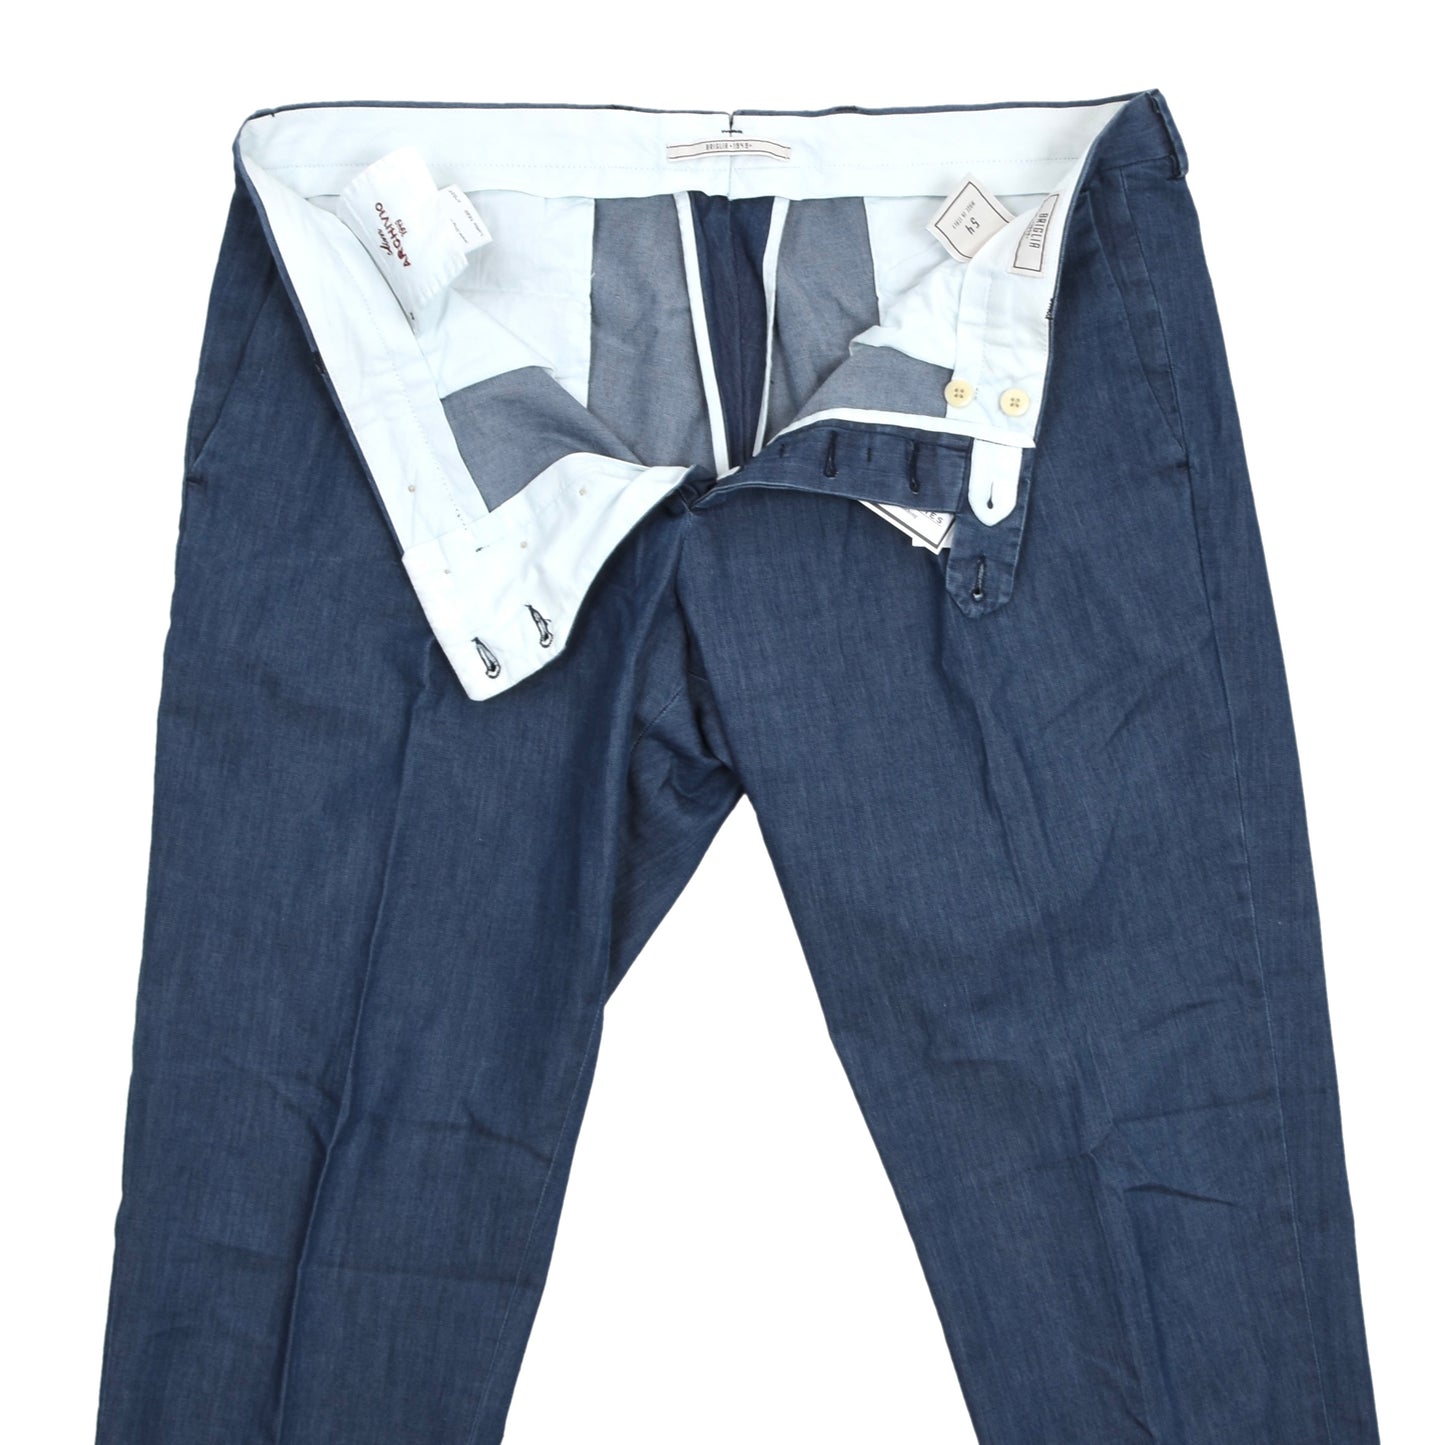 Briglia Cotton Pants Archivio Slim Size 54 - Blue